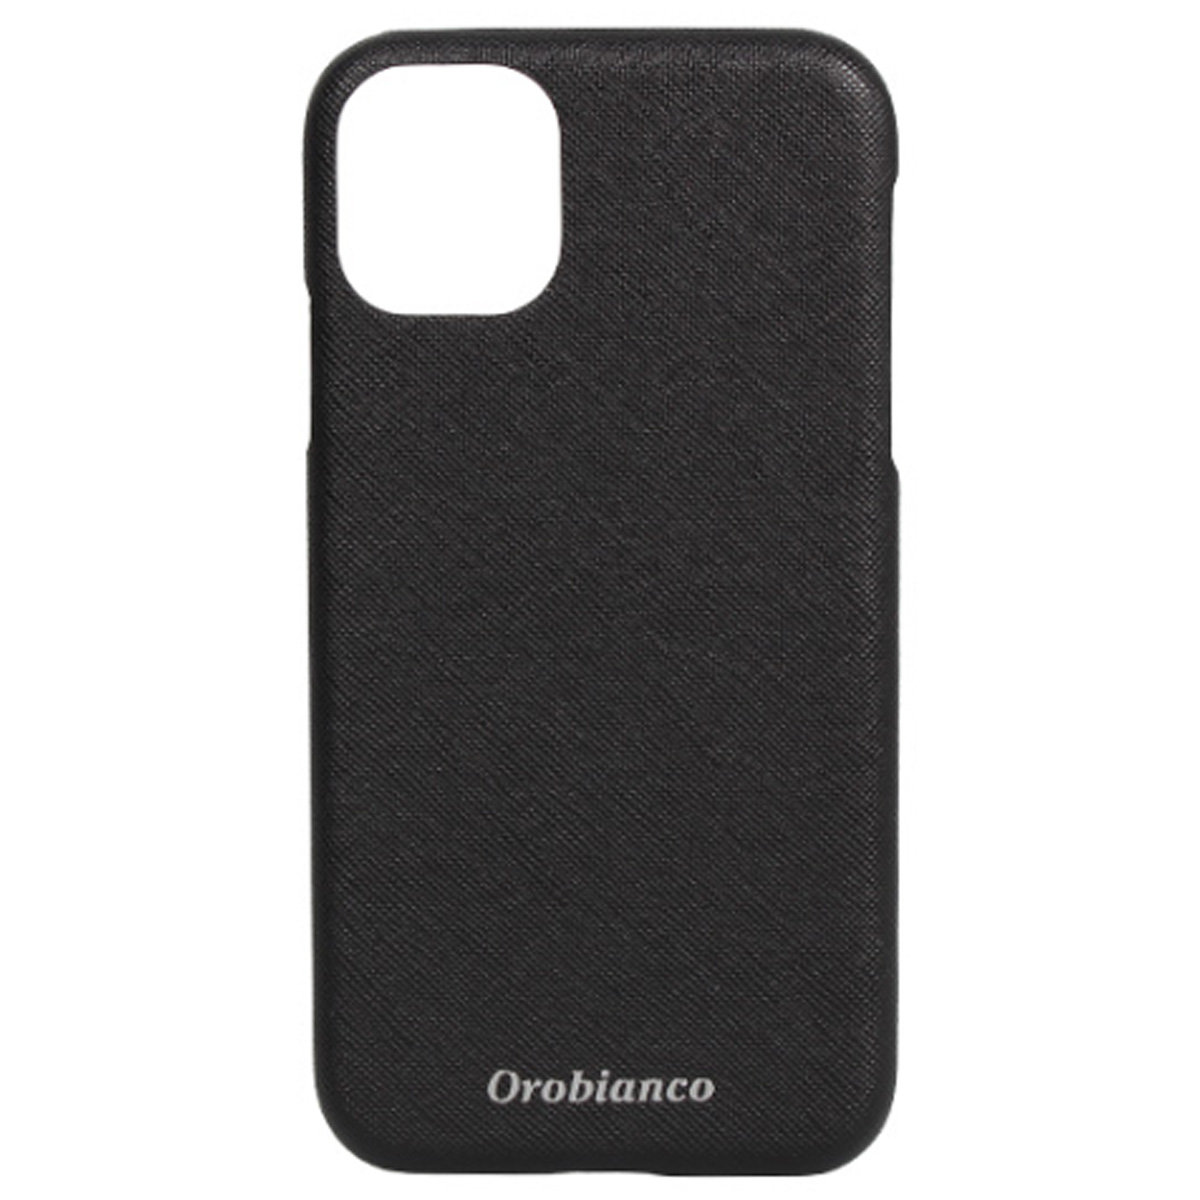 オロビアンコ Orobianco iPhone 11 ケース スマホ 携帯 アイフォン メンズ レデ...